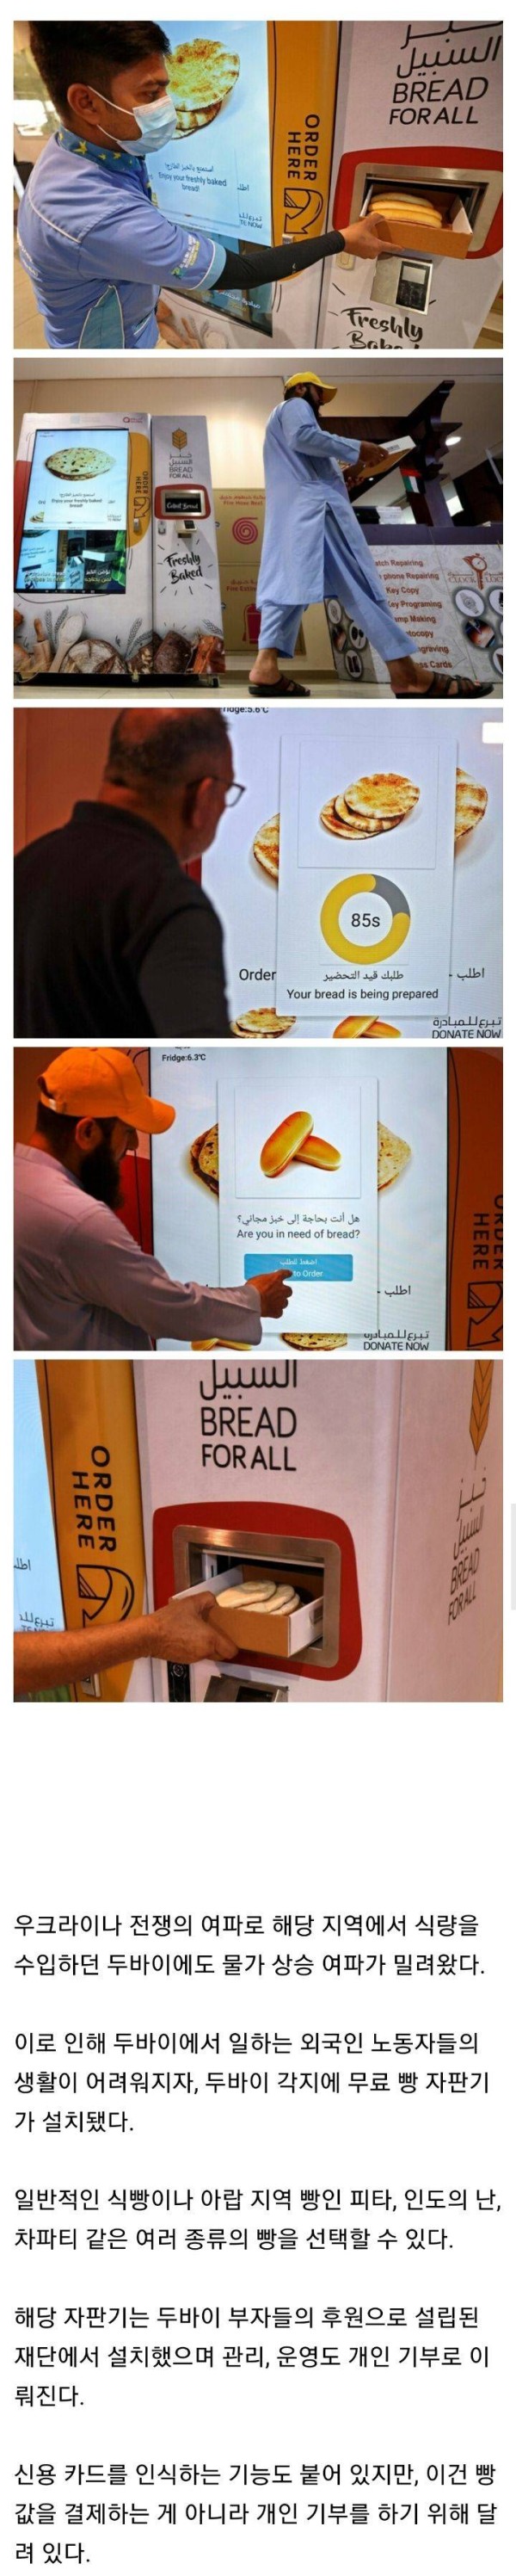 클라스가 다른 두바이 무료 빵 자판기